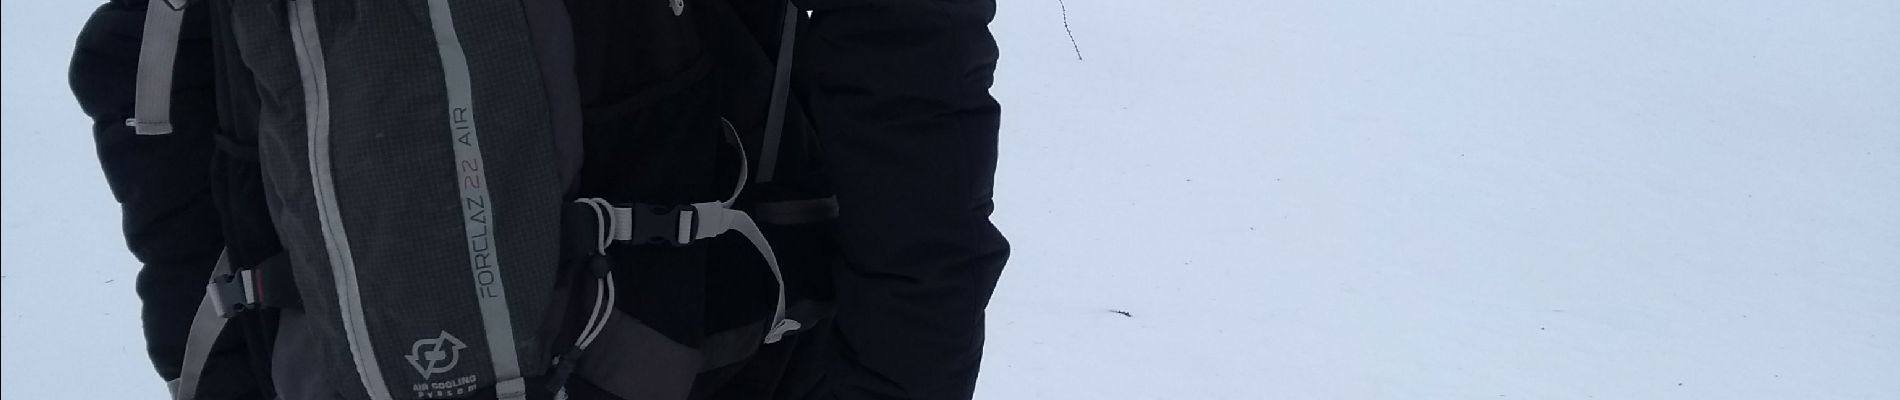 Percorso Racchette da neve La Condamine-Châtelard - raquettes Ste Anne la Condamine - Photo